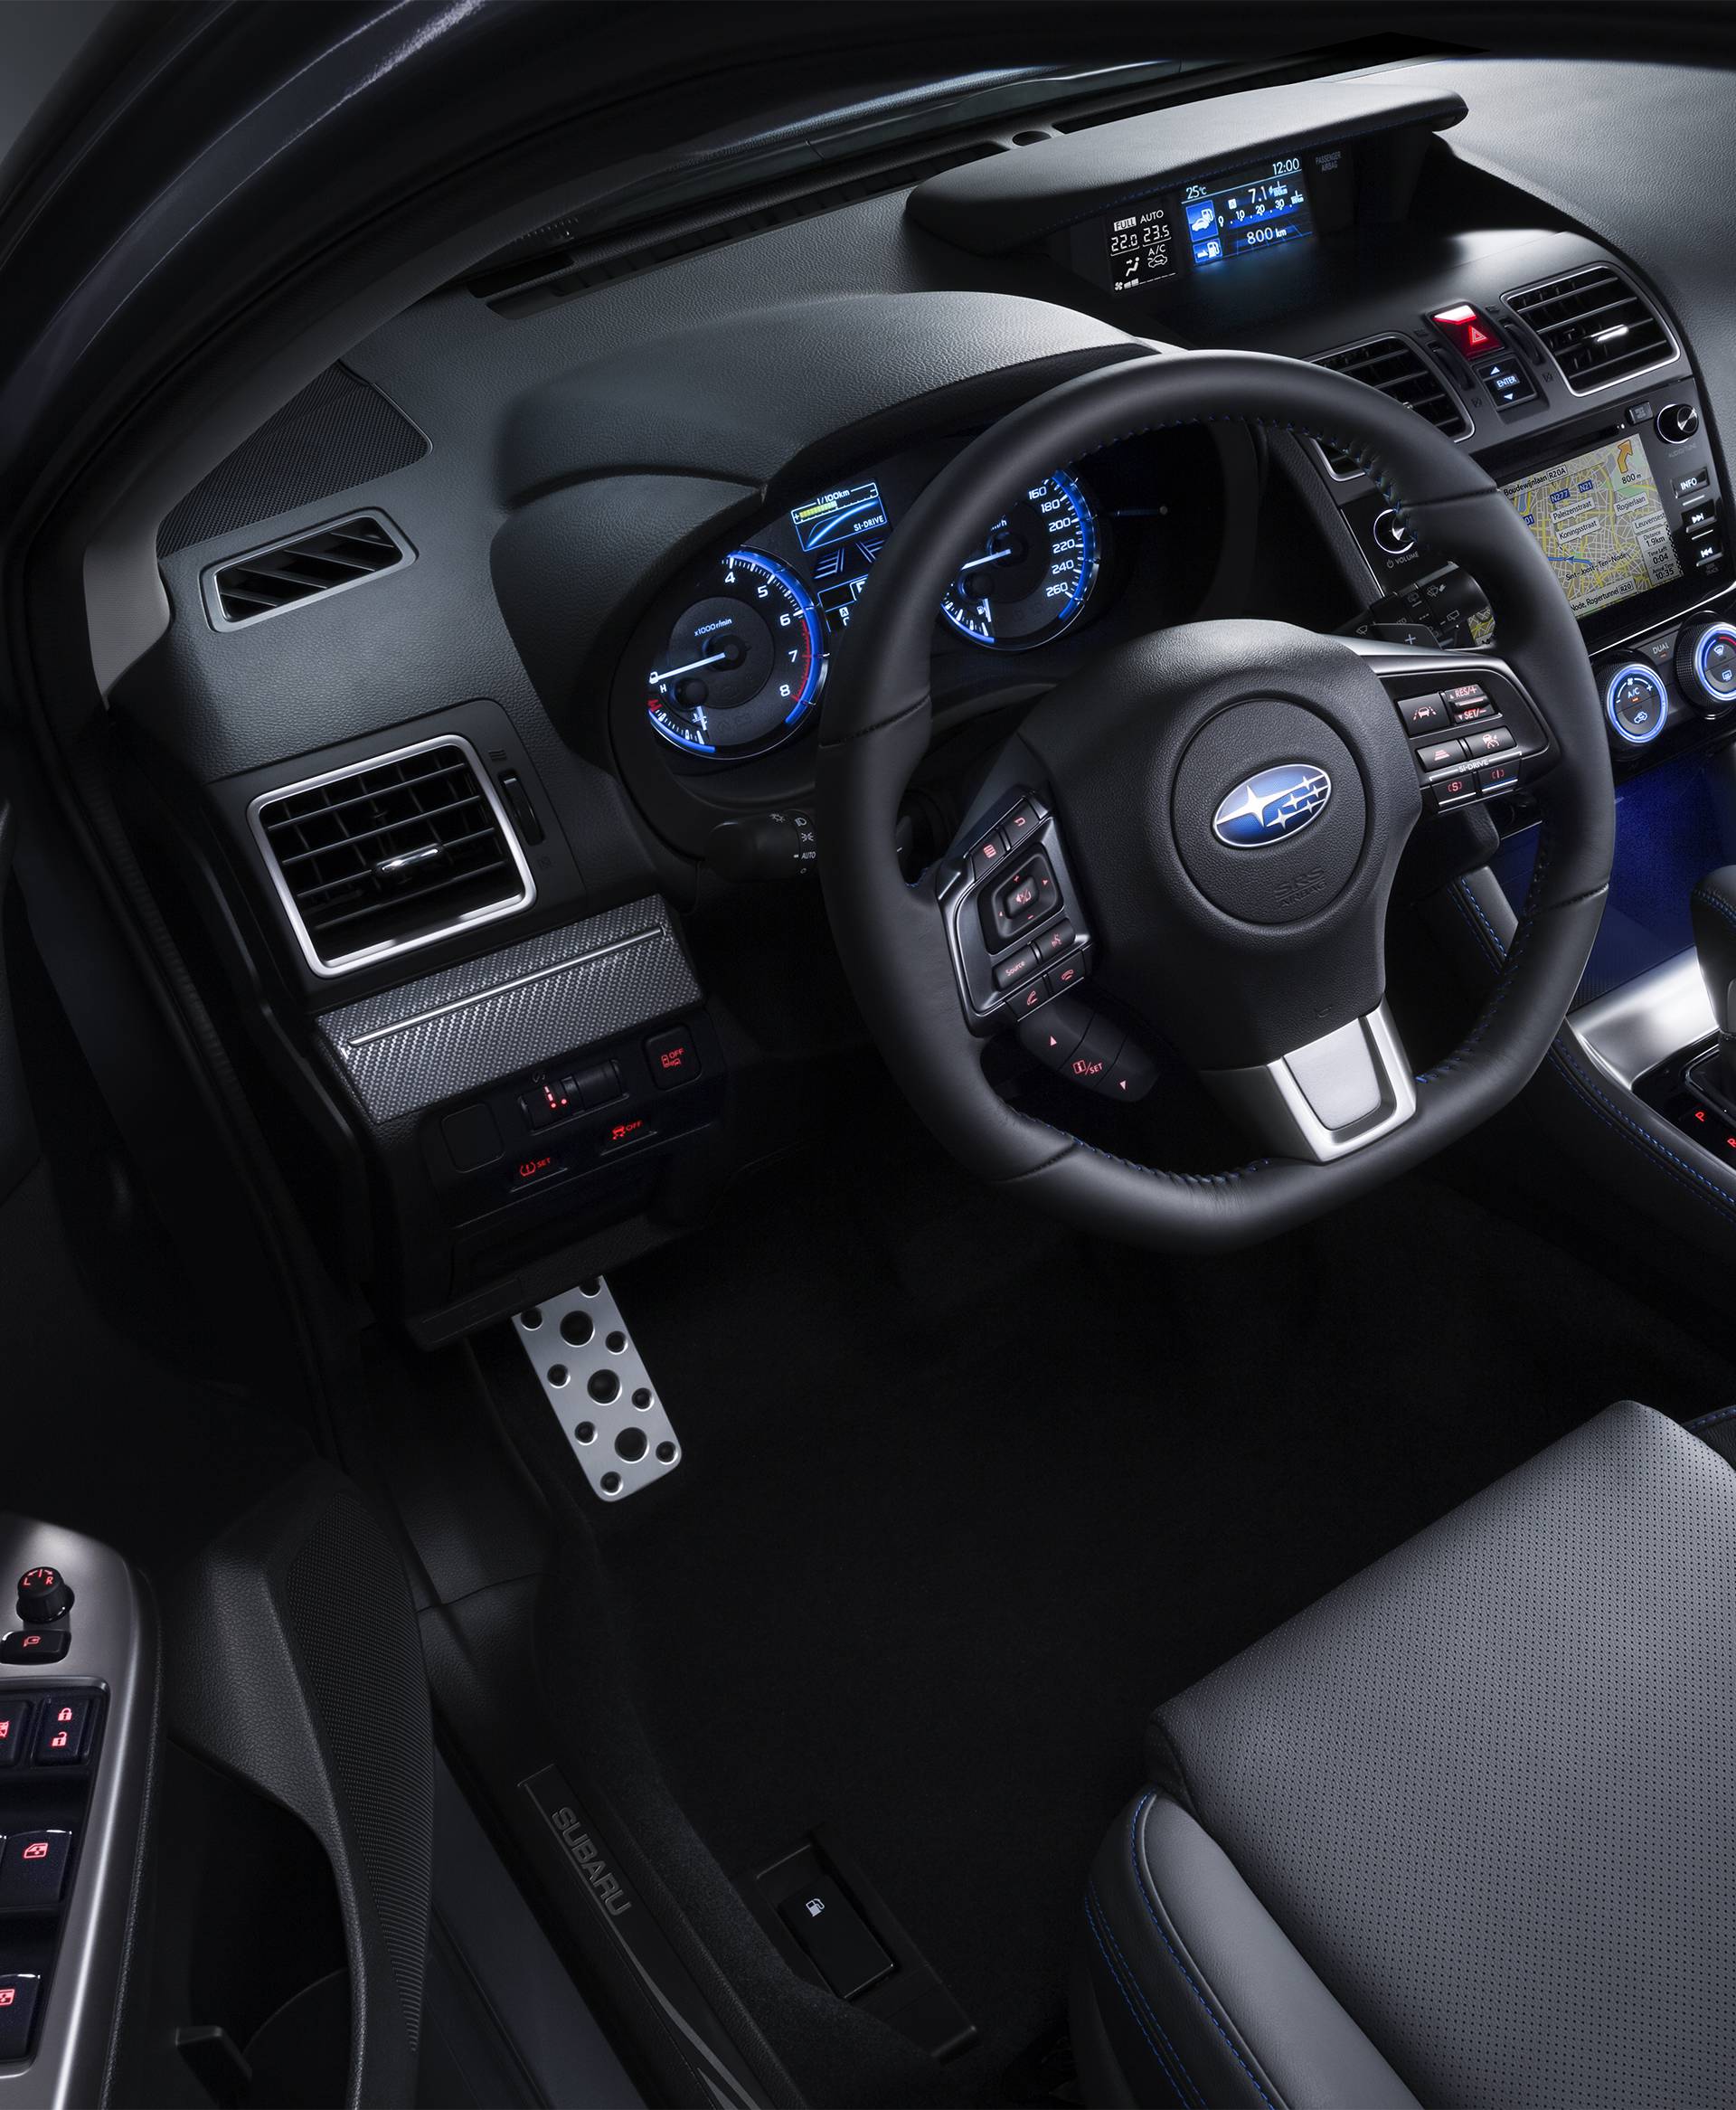 Napredak u sigurnosti: Vozili smo obnovljeni Subaru Levorg